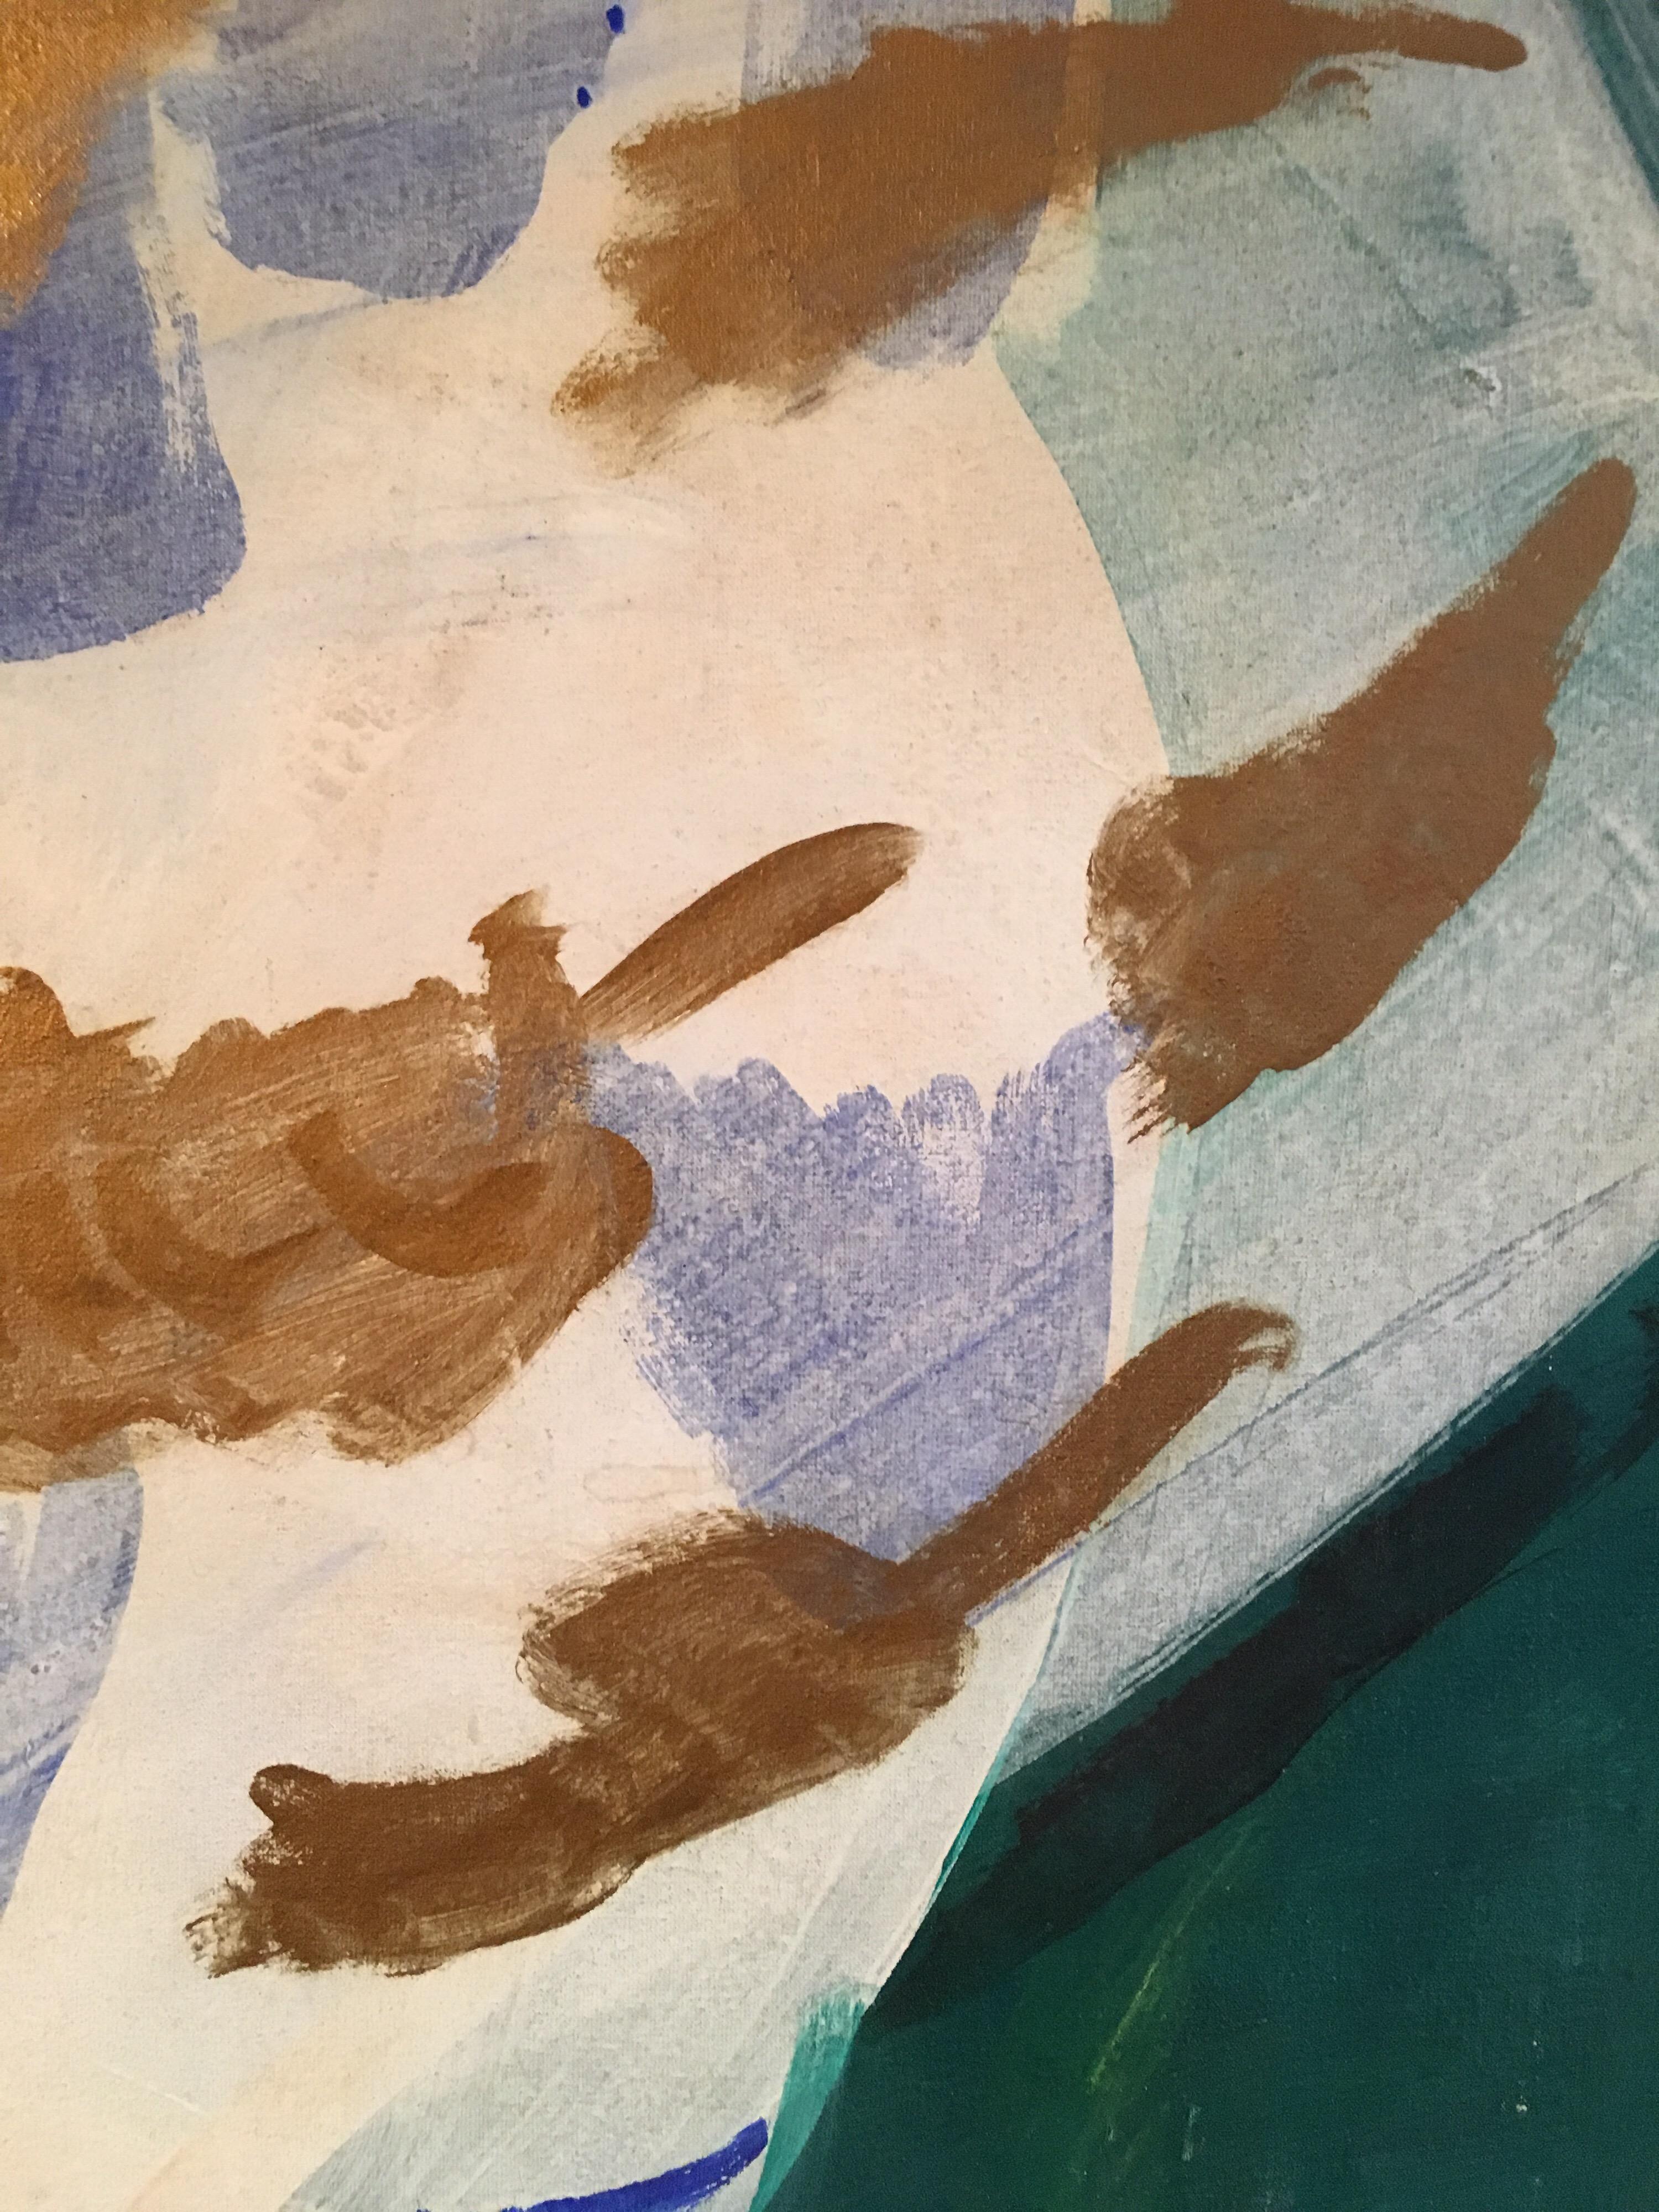 Peinture à l'huile abstraite, couleurs vert, bleu et or
Par l'artiste français Roland Gautier, 20e siècle
Signé par l'artiste au dos de la peinture
Peinture à l'huile sur carton, encadrée
Taille de l'encadrement : 30 x 37.5 pouces

Abstrait